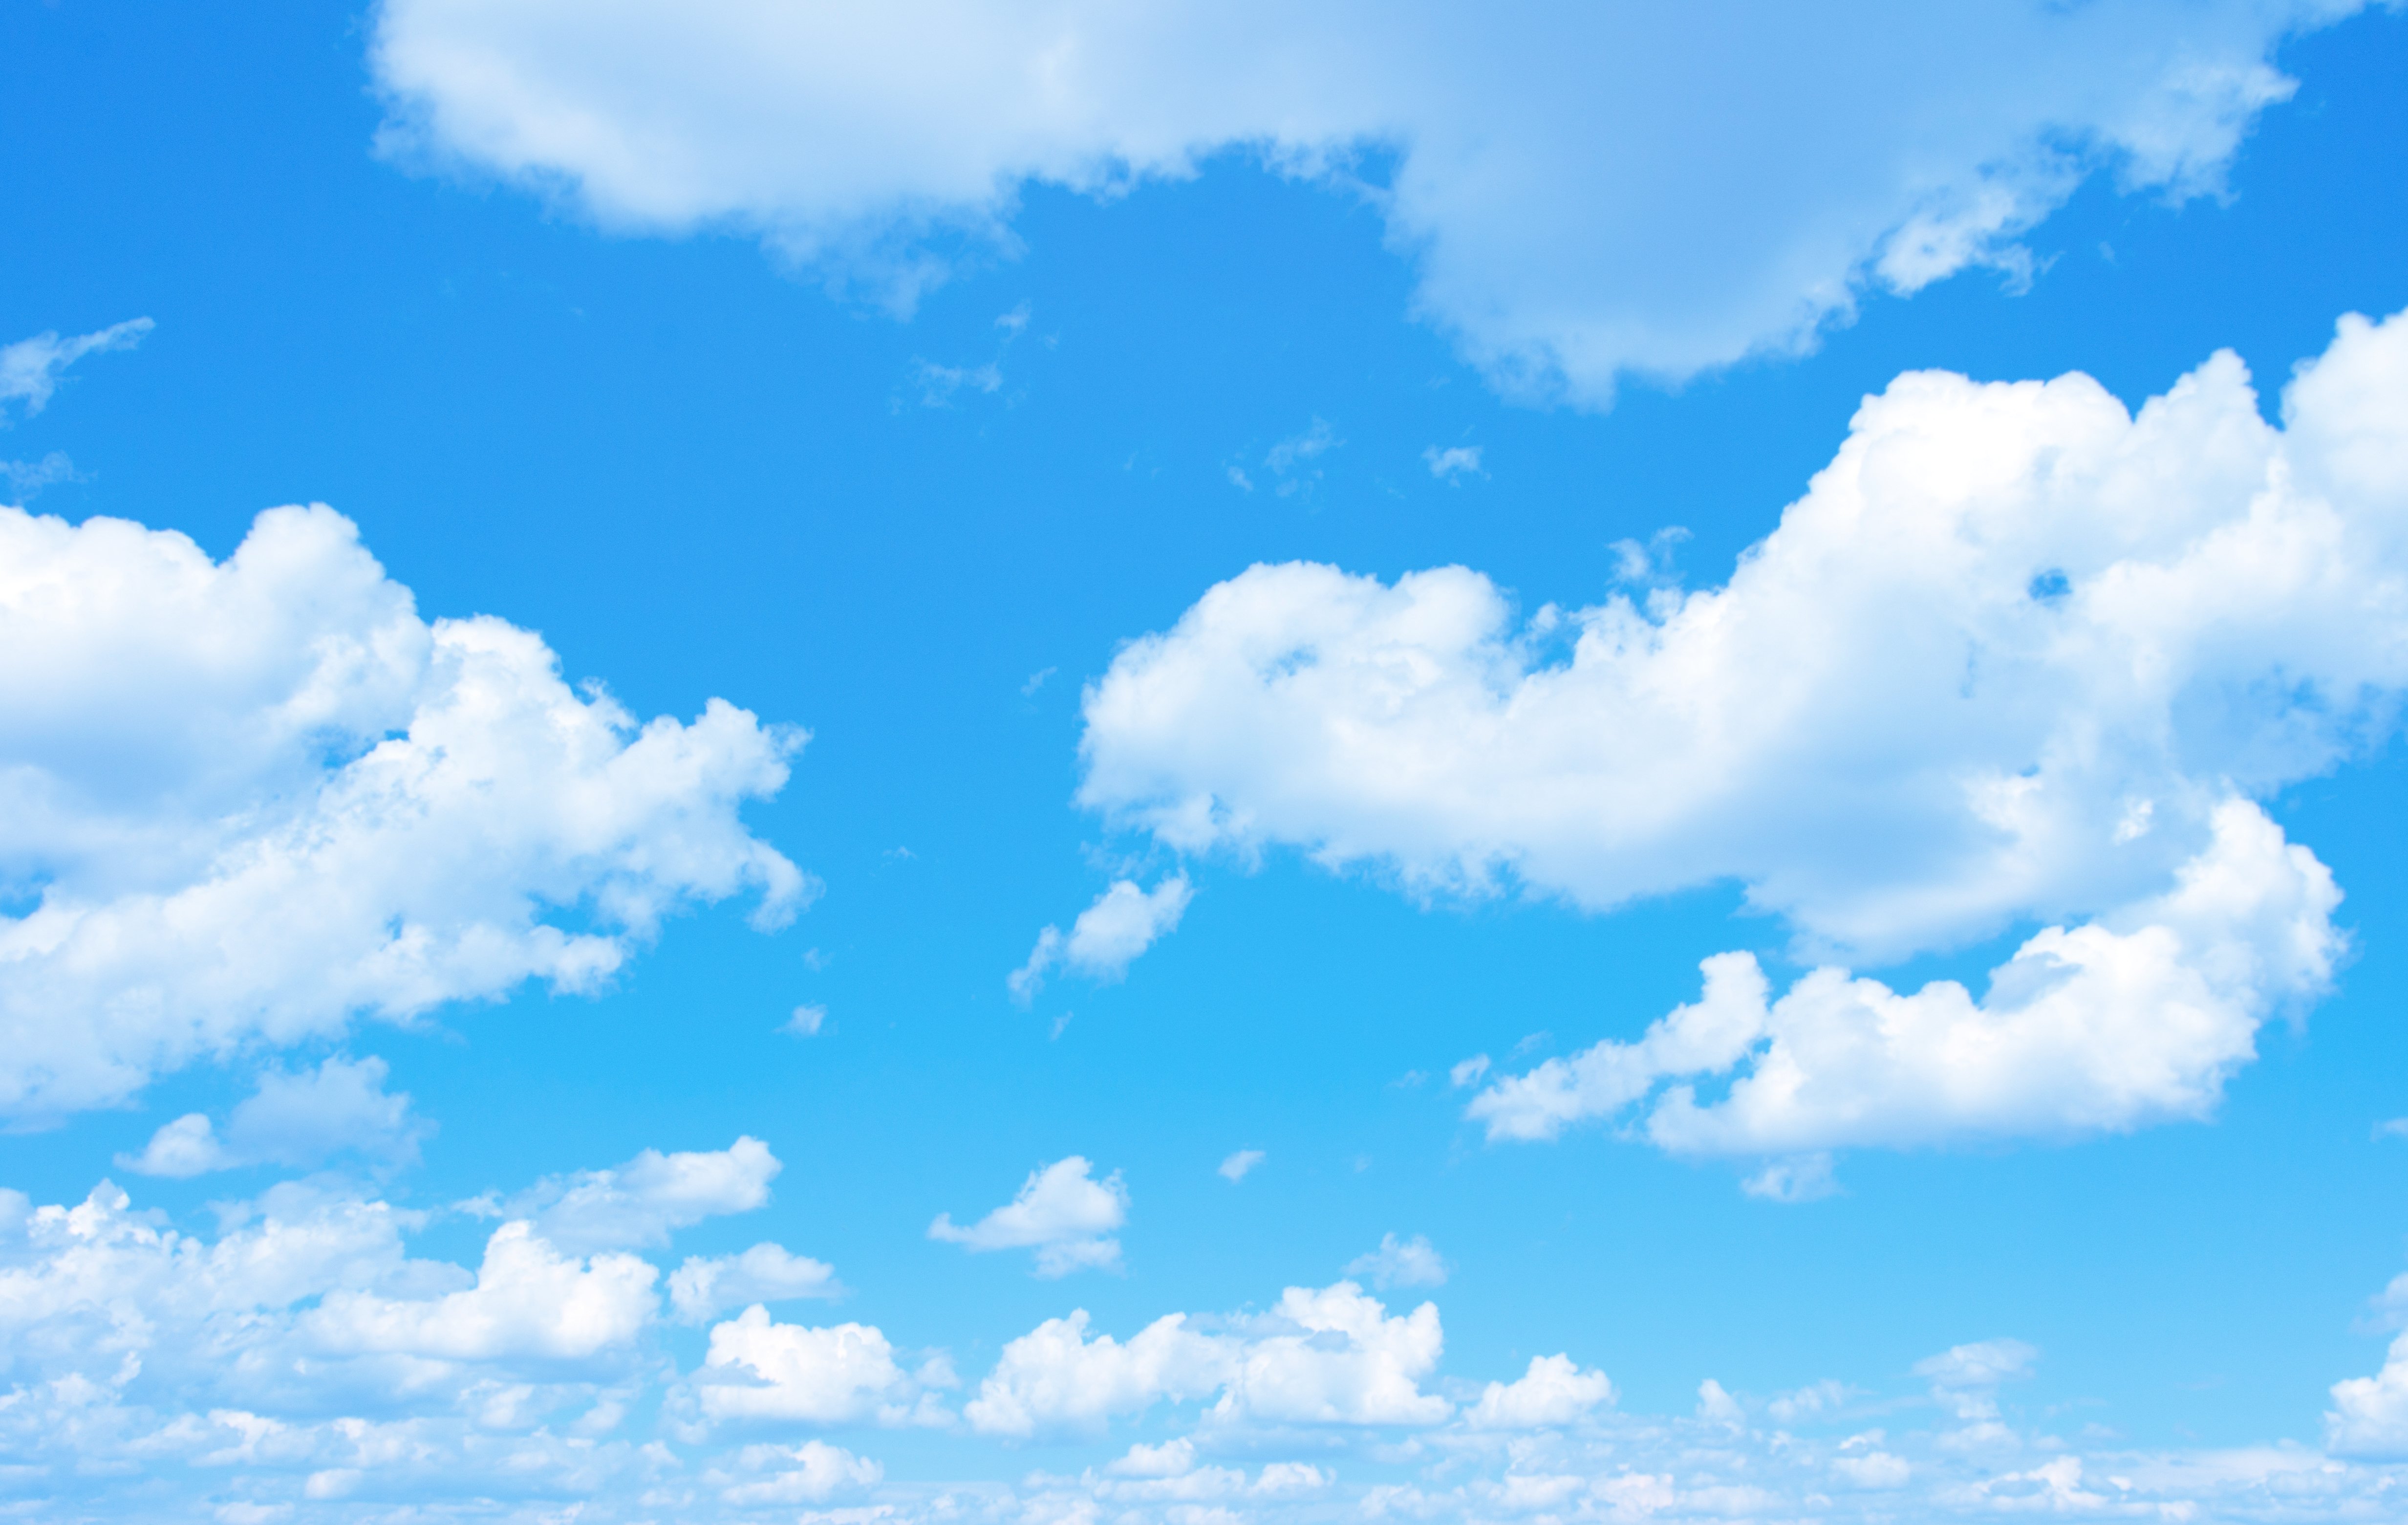 Hình nền bầu trời xanh (Blue Sky Wallpapers on WallpaperDog): Hình nền bầu trời xanh luôn là một trong những lựa chọn tốt nhất để làm nền cho thiết bị của bạn. Không chỉ đơn thuần là một bức ảnh đẹp, nó còn giúp bạn có thể thư giãn và tạo ra một bầu không khí thoải mái. Chúng tôi cung cấp cho bạn nhiều lựa chọn hình ảnh đa dạng để bạn có thể tùy chỉnh cho thiết bị của mình. Hãy ghé thăm WallpaperDog ngay hôm nay để cập nhật những hình nền bầu trời đẹp nhất.